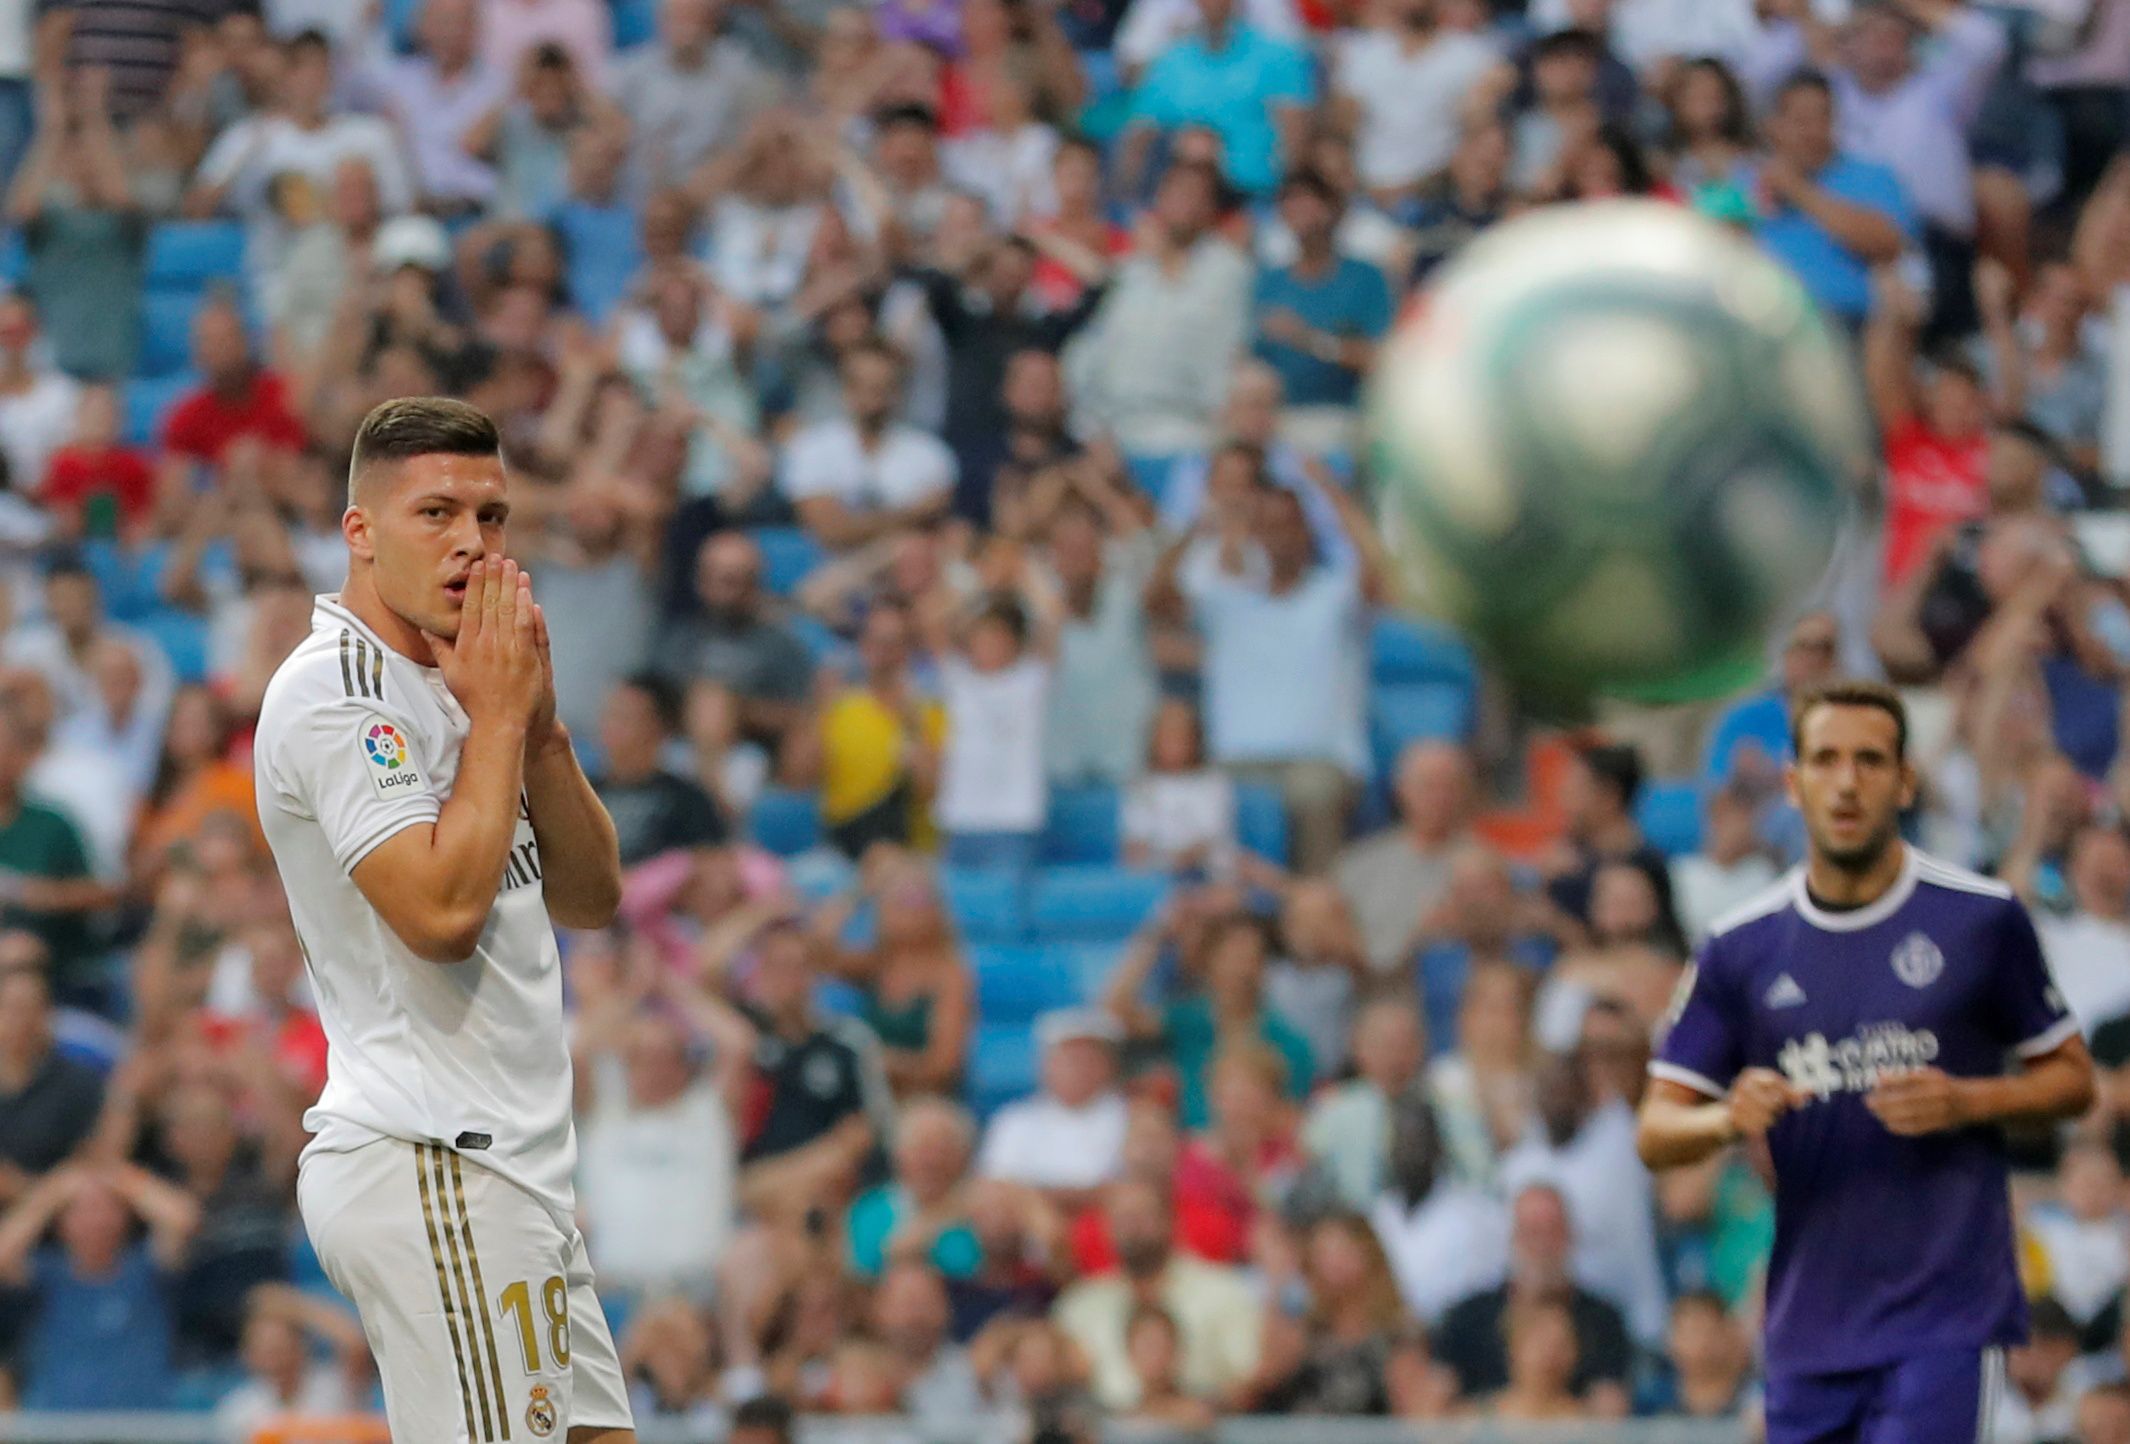 Soccer Football - La Liga Santander - Real Madrid v Real Valladolid - Santiago Bernabeu, Madrid, Spain - August 24, 2019  Real Madrid's Luka Jovic reacts  REUTERS/Juan Medina